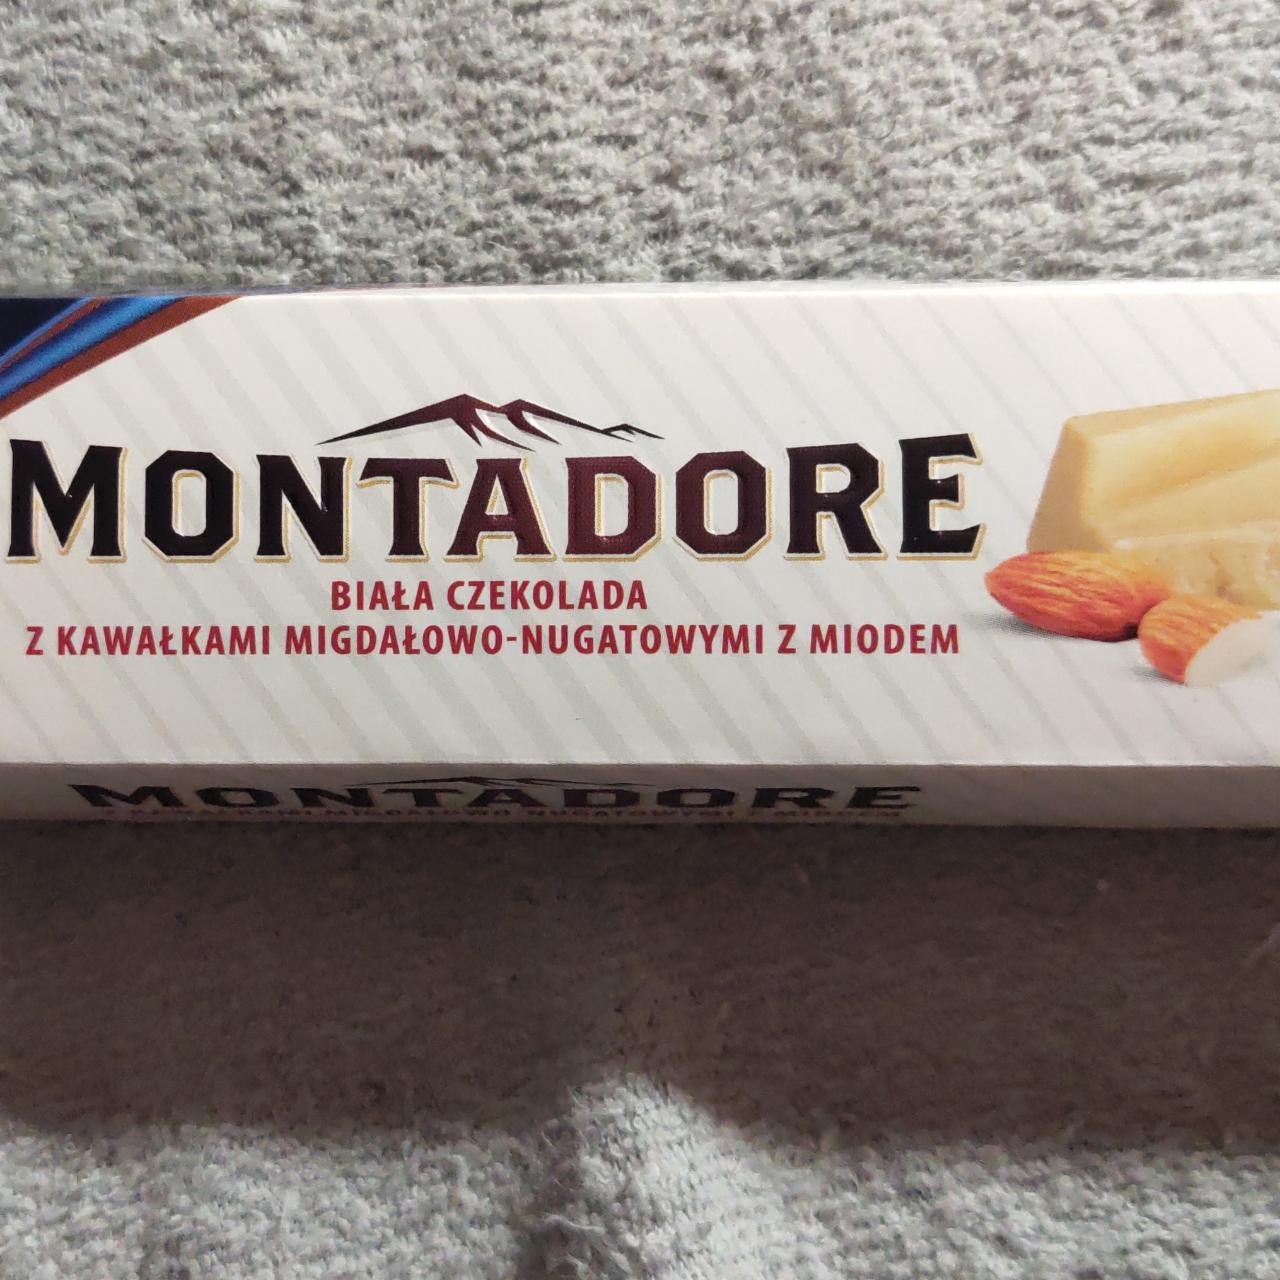 Fotografie - Biała czekolada z kawalkami migdalowo-nugatowymi z miodem Montadore